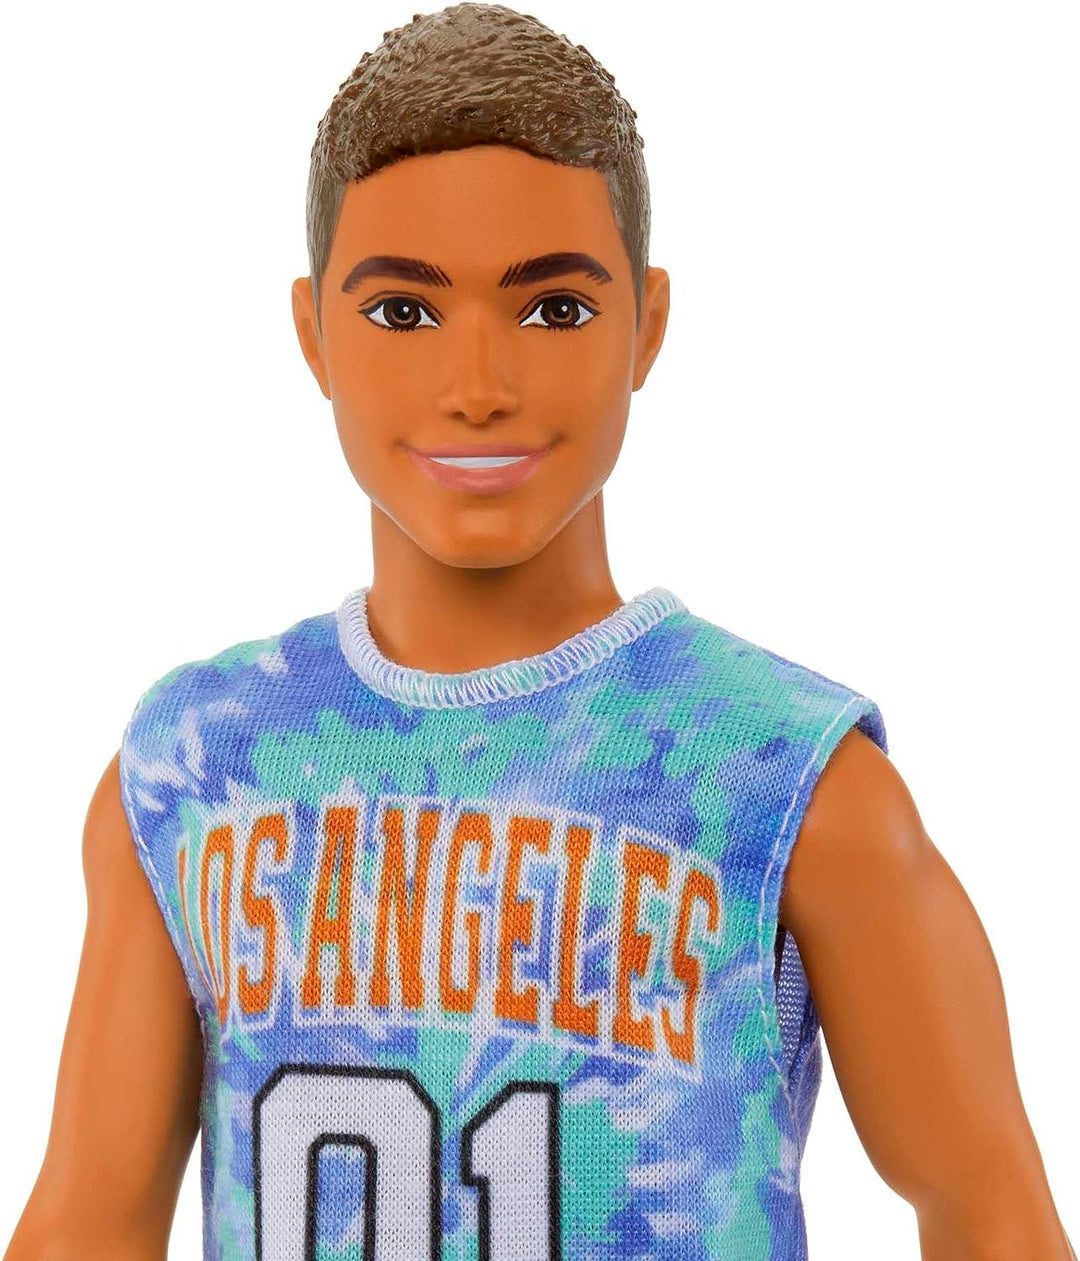 Barbie Ken Fashionistas Puppe Nr. 212 mit Beinprothese, trägt Los Angeles Jersey